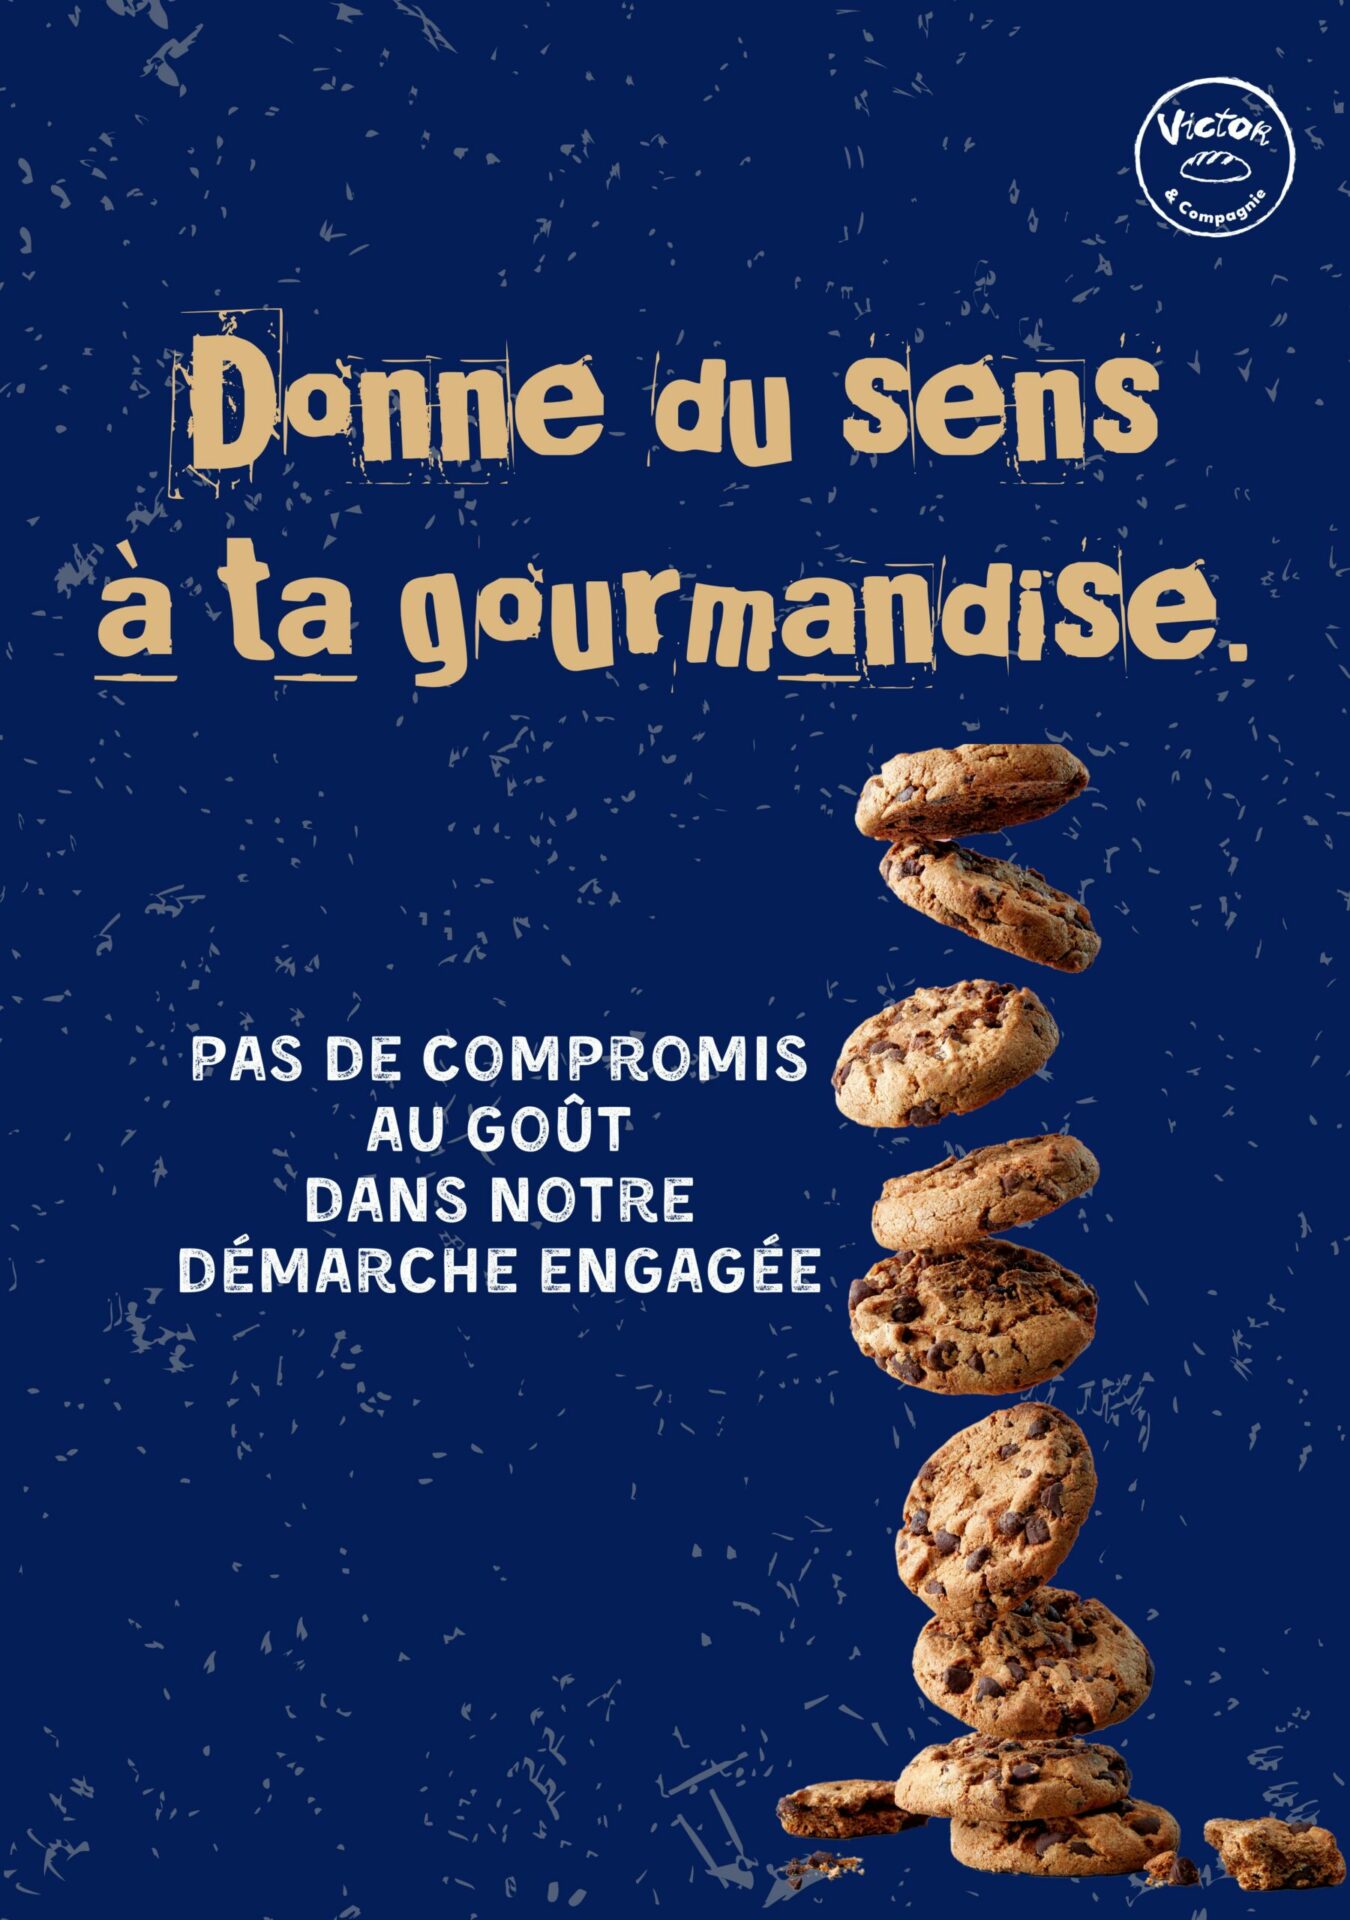 cookies avec le texte "donne du sens à ta gourmandise"